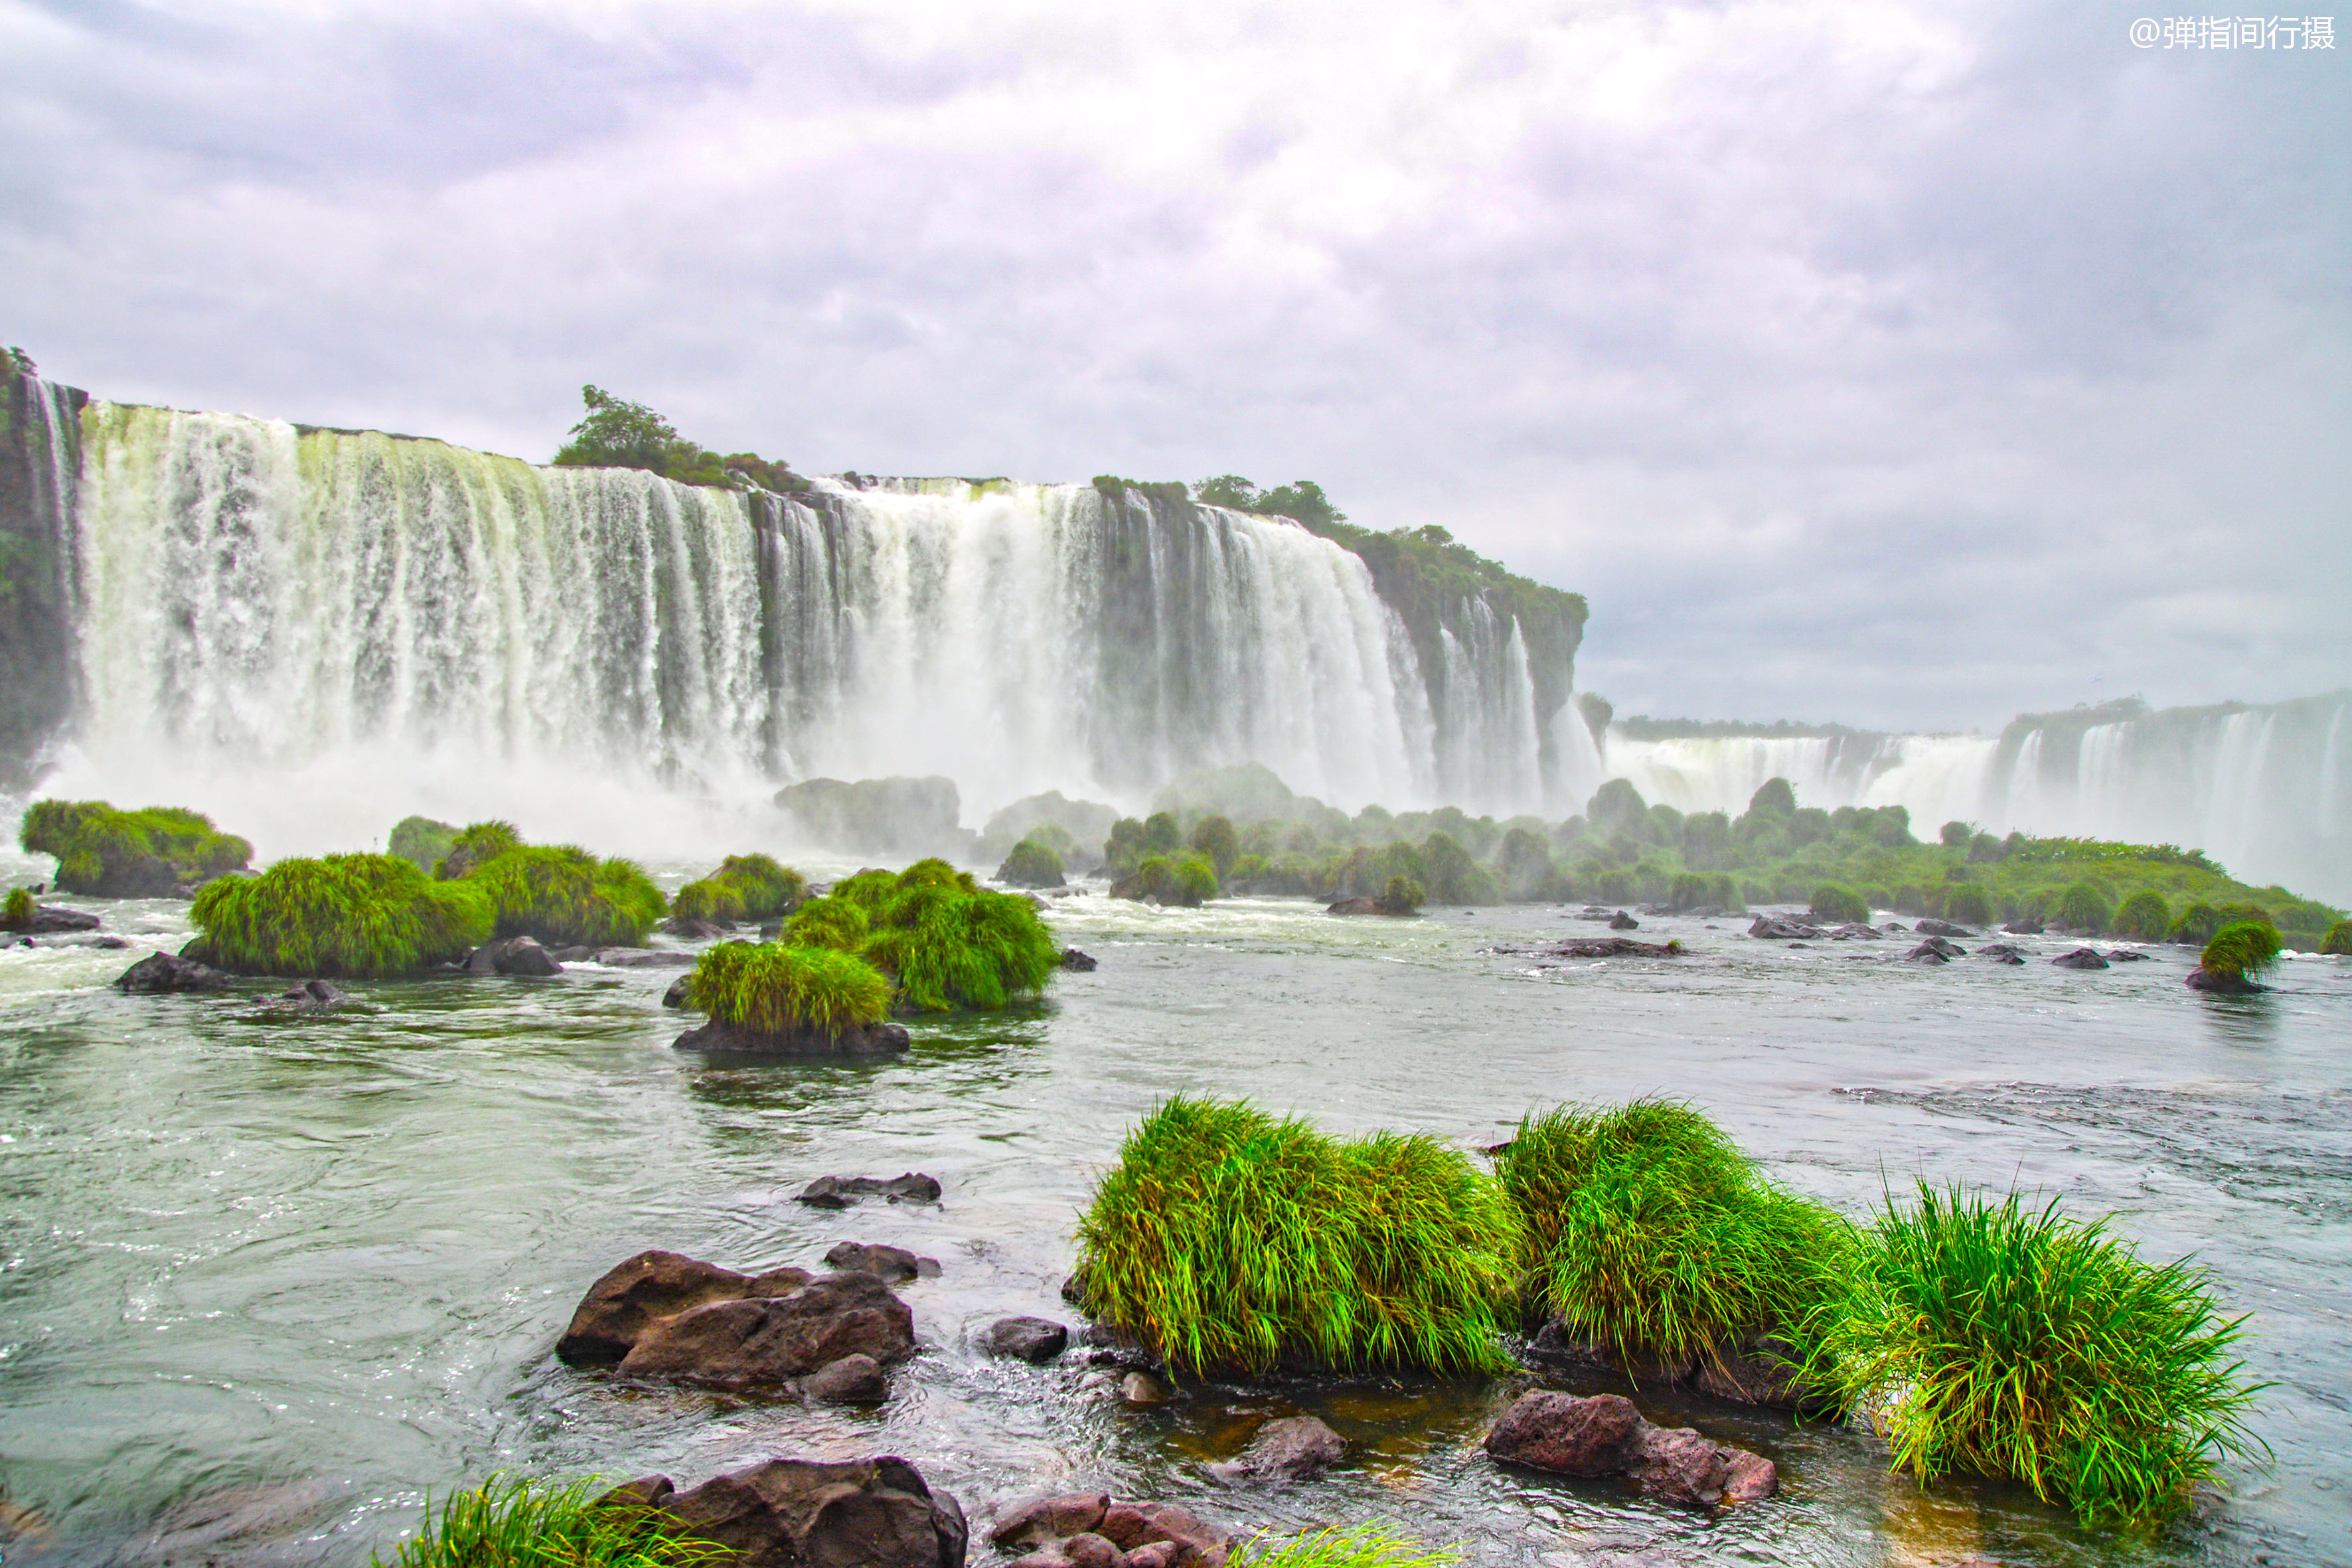 世界上最宽广的瀑布,行跨南美两国,常年获评最佳旅行目的地